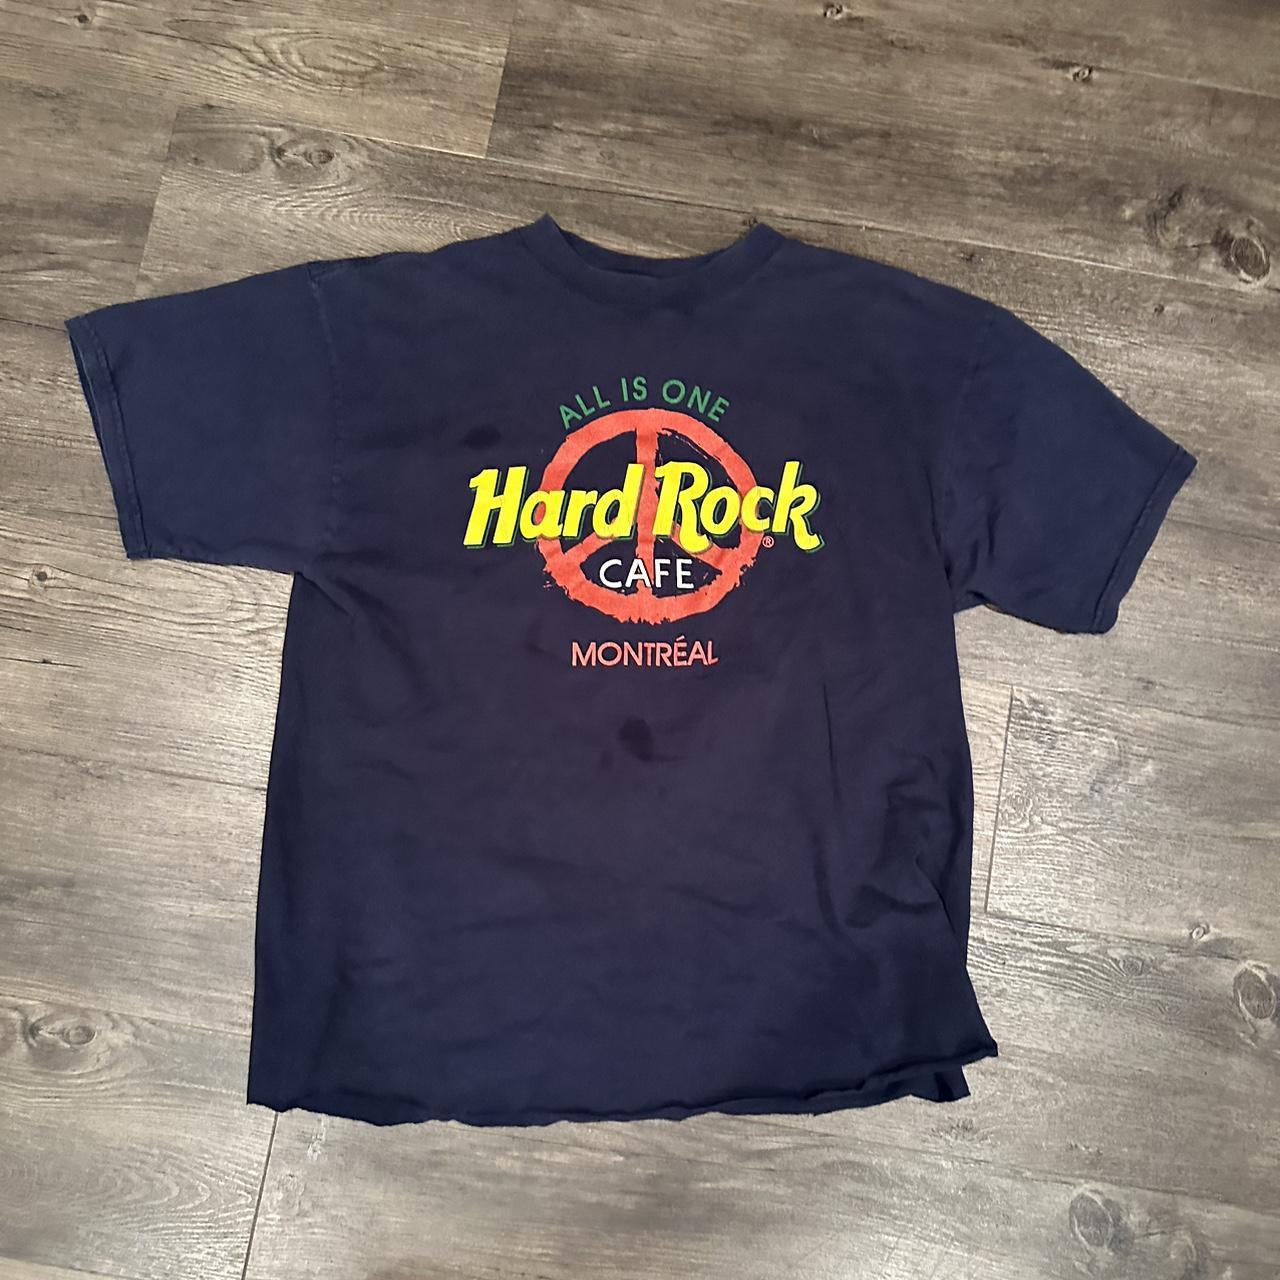 Montreal hard rock cafe t shirt L -bottom was... - Depop